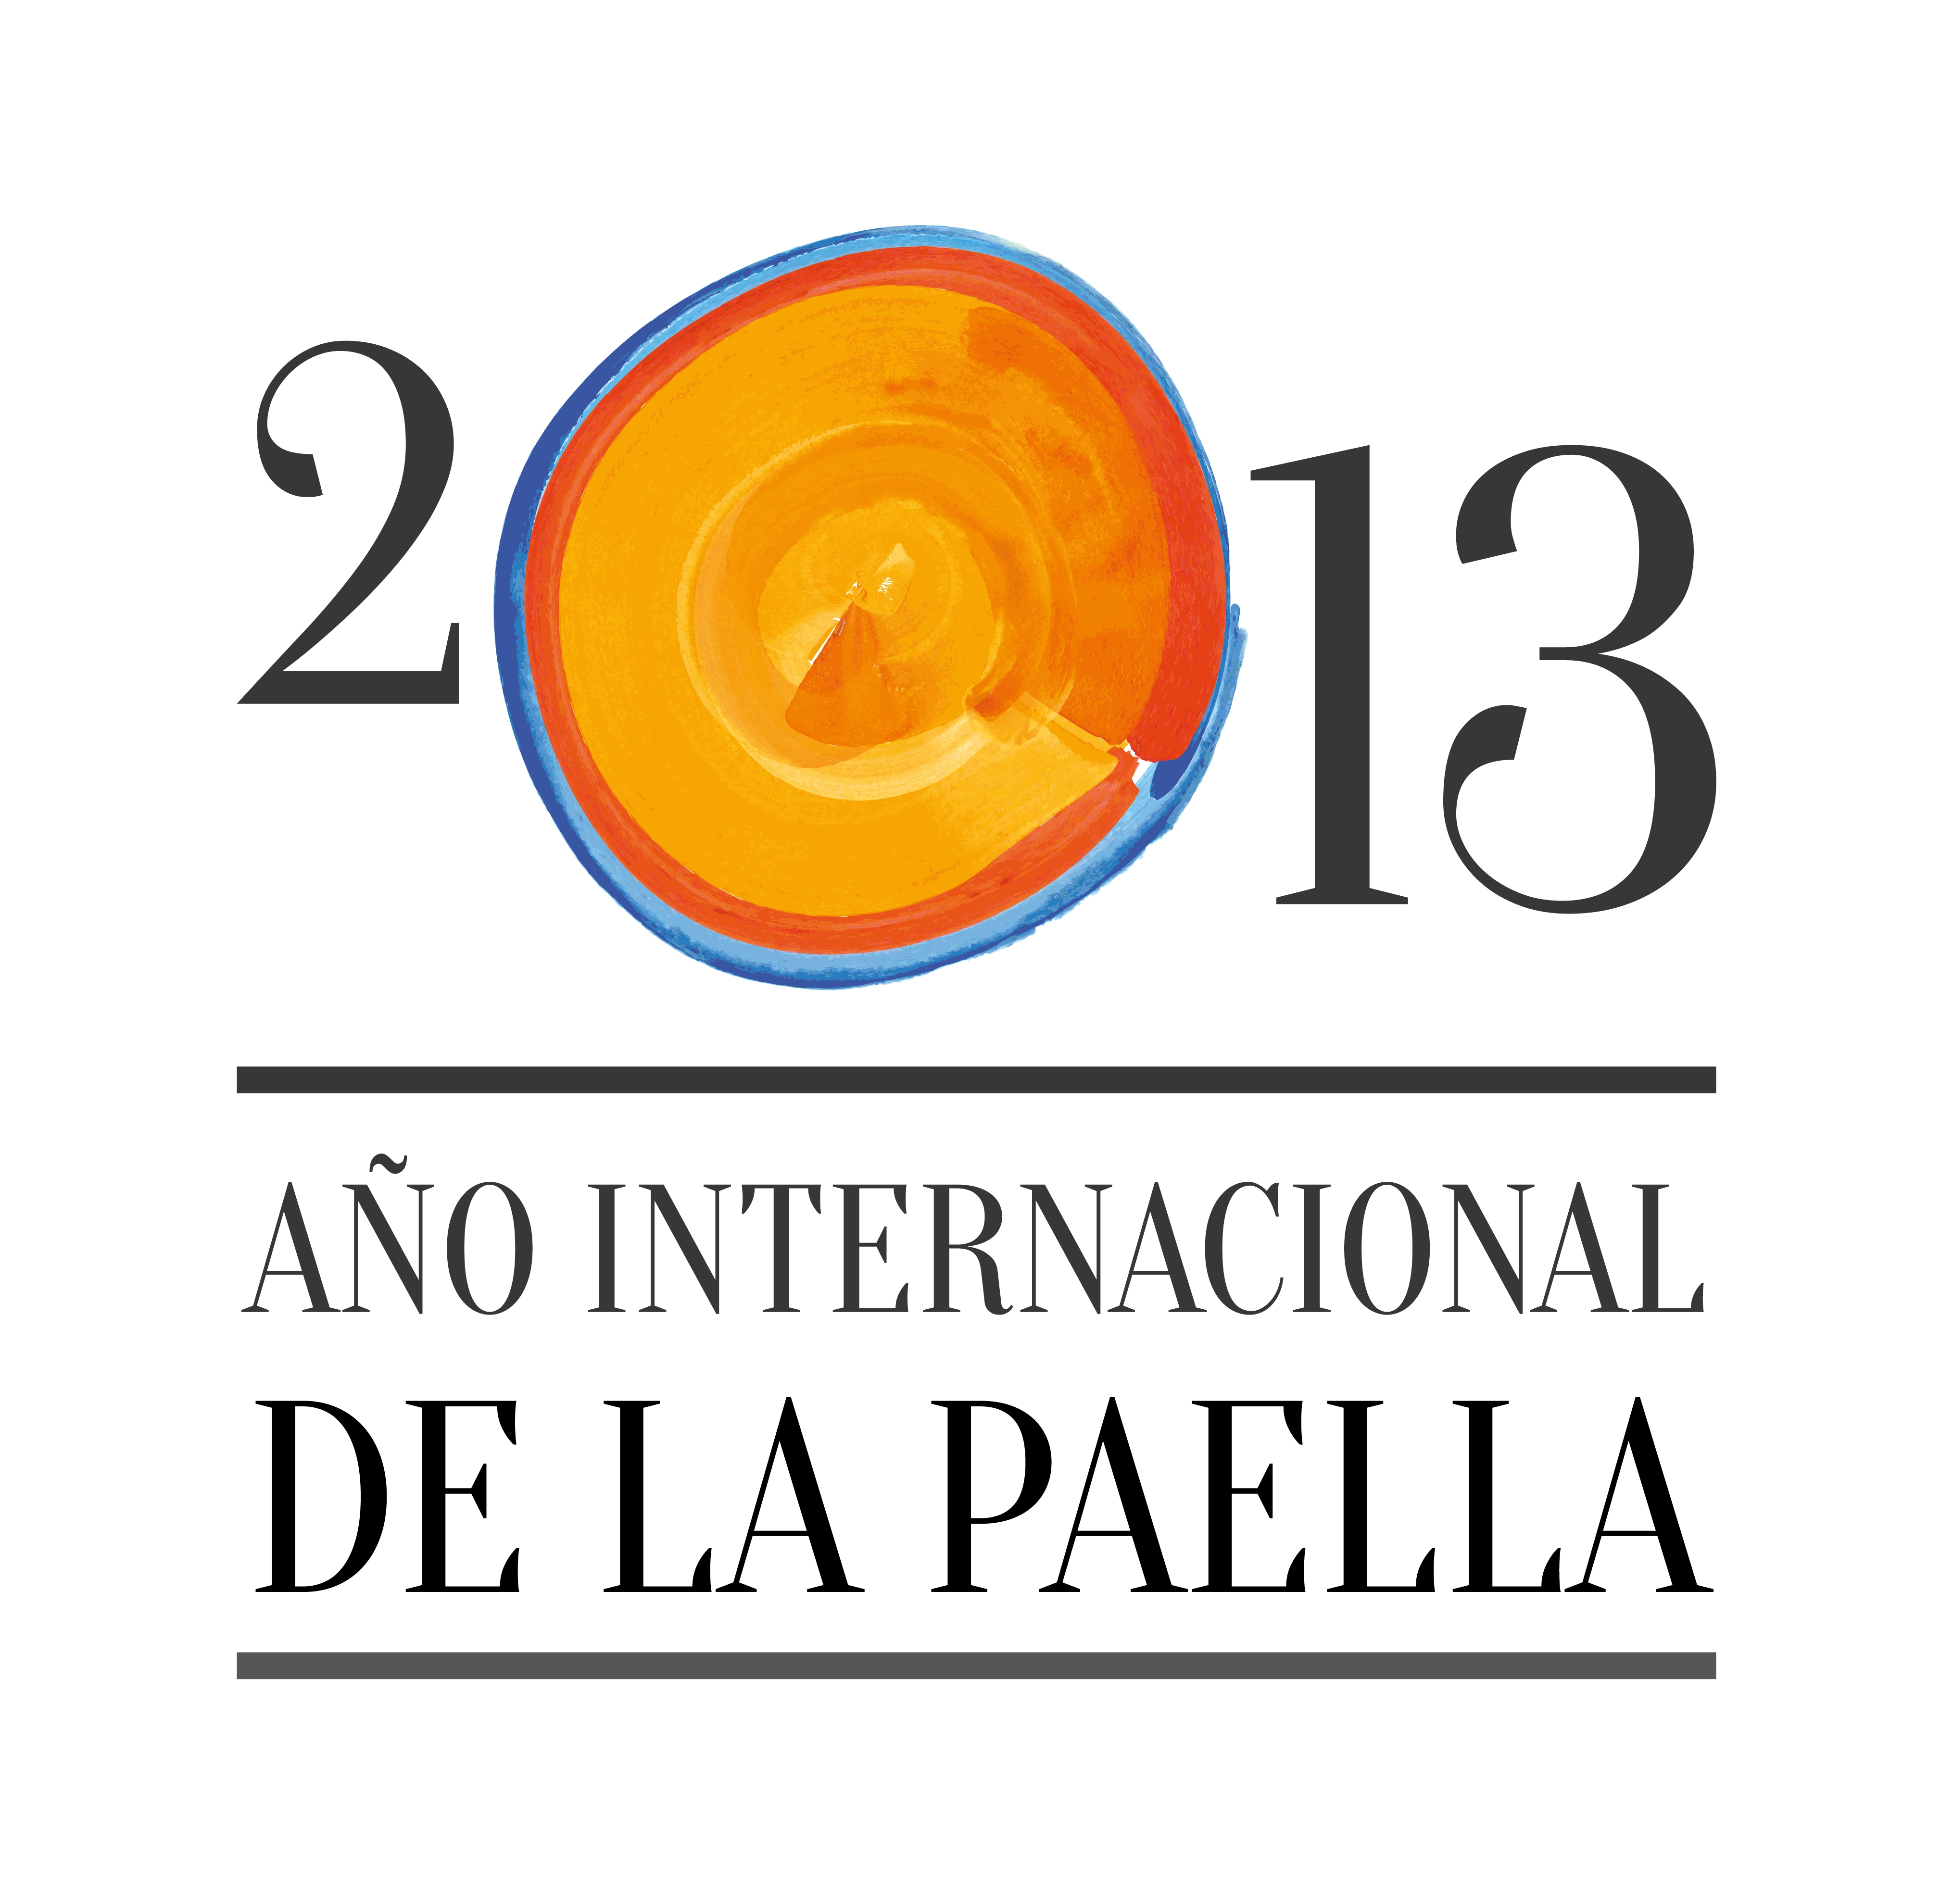 2013: Año Internacional de la Paella